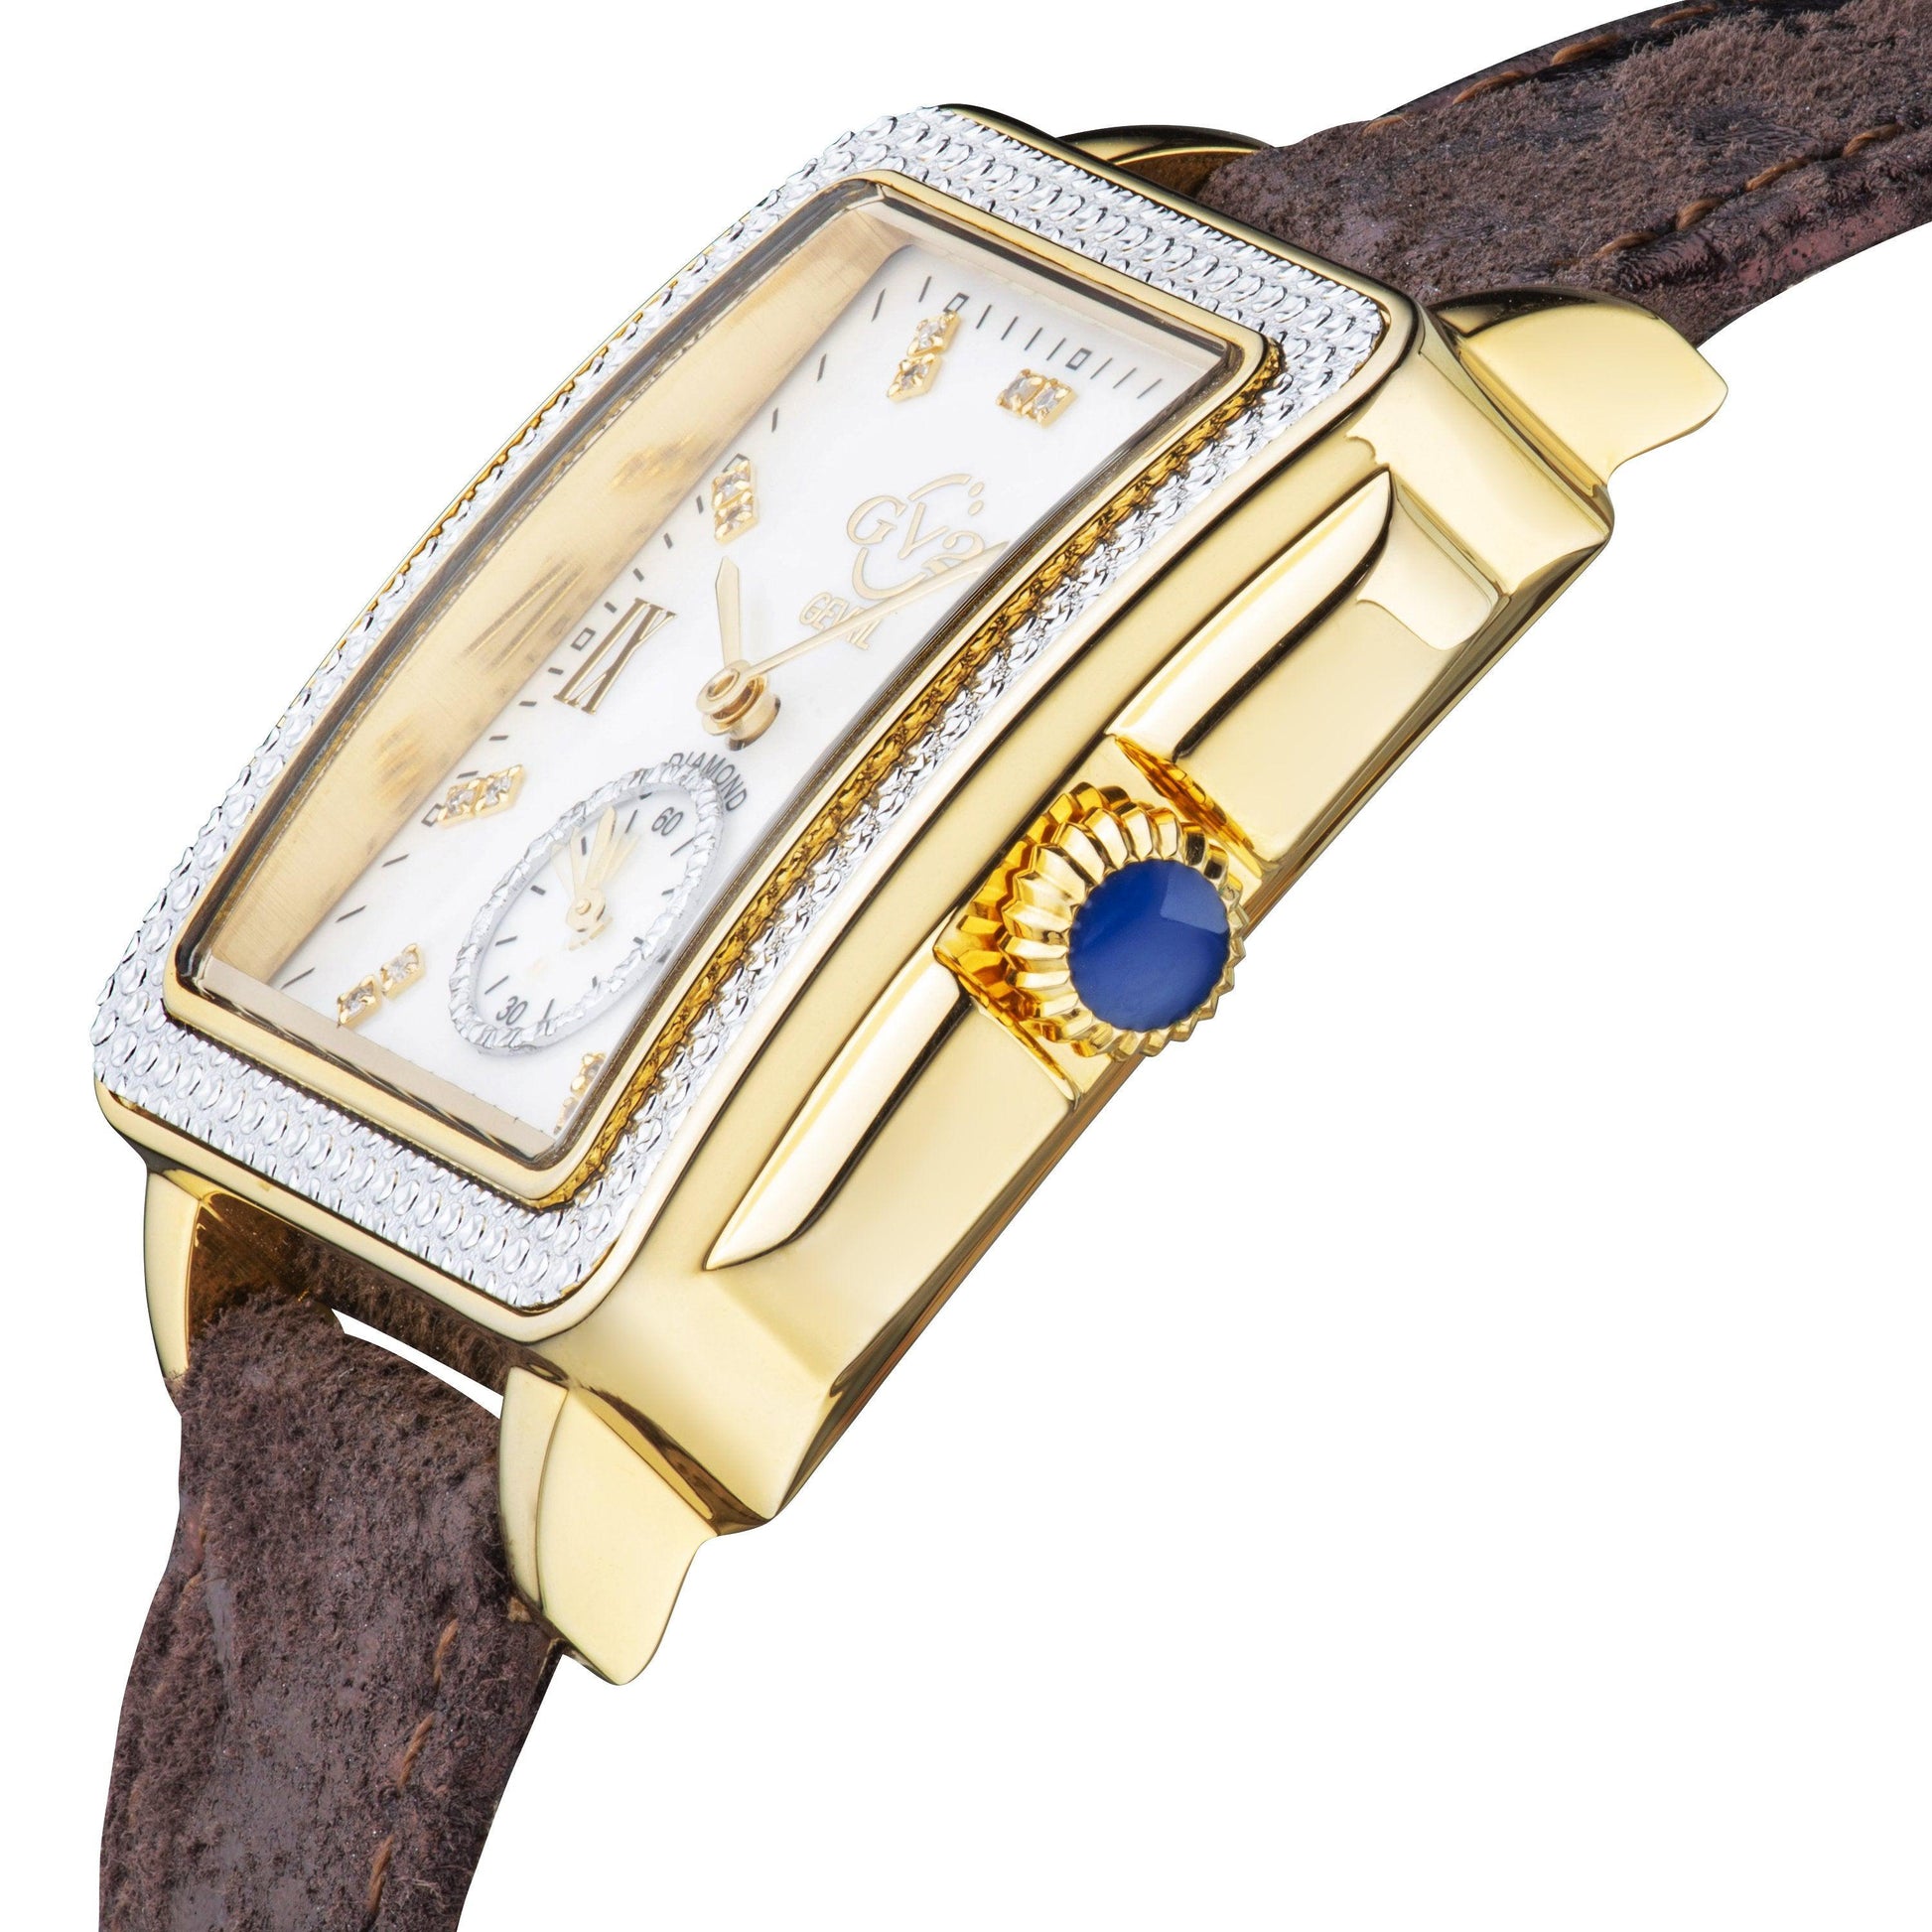 Gevril-Luxury-Swiss-Watches-GV2 Bari Diamond-9256